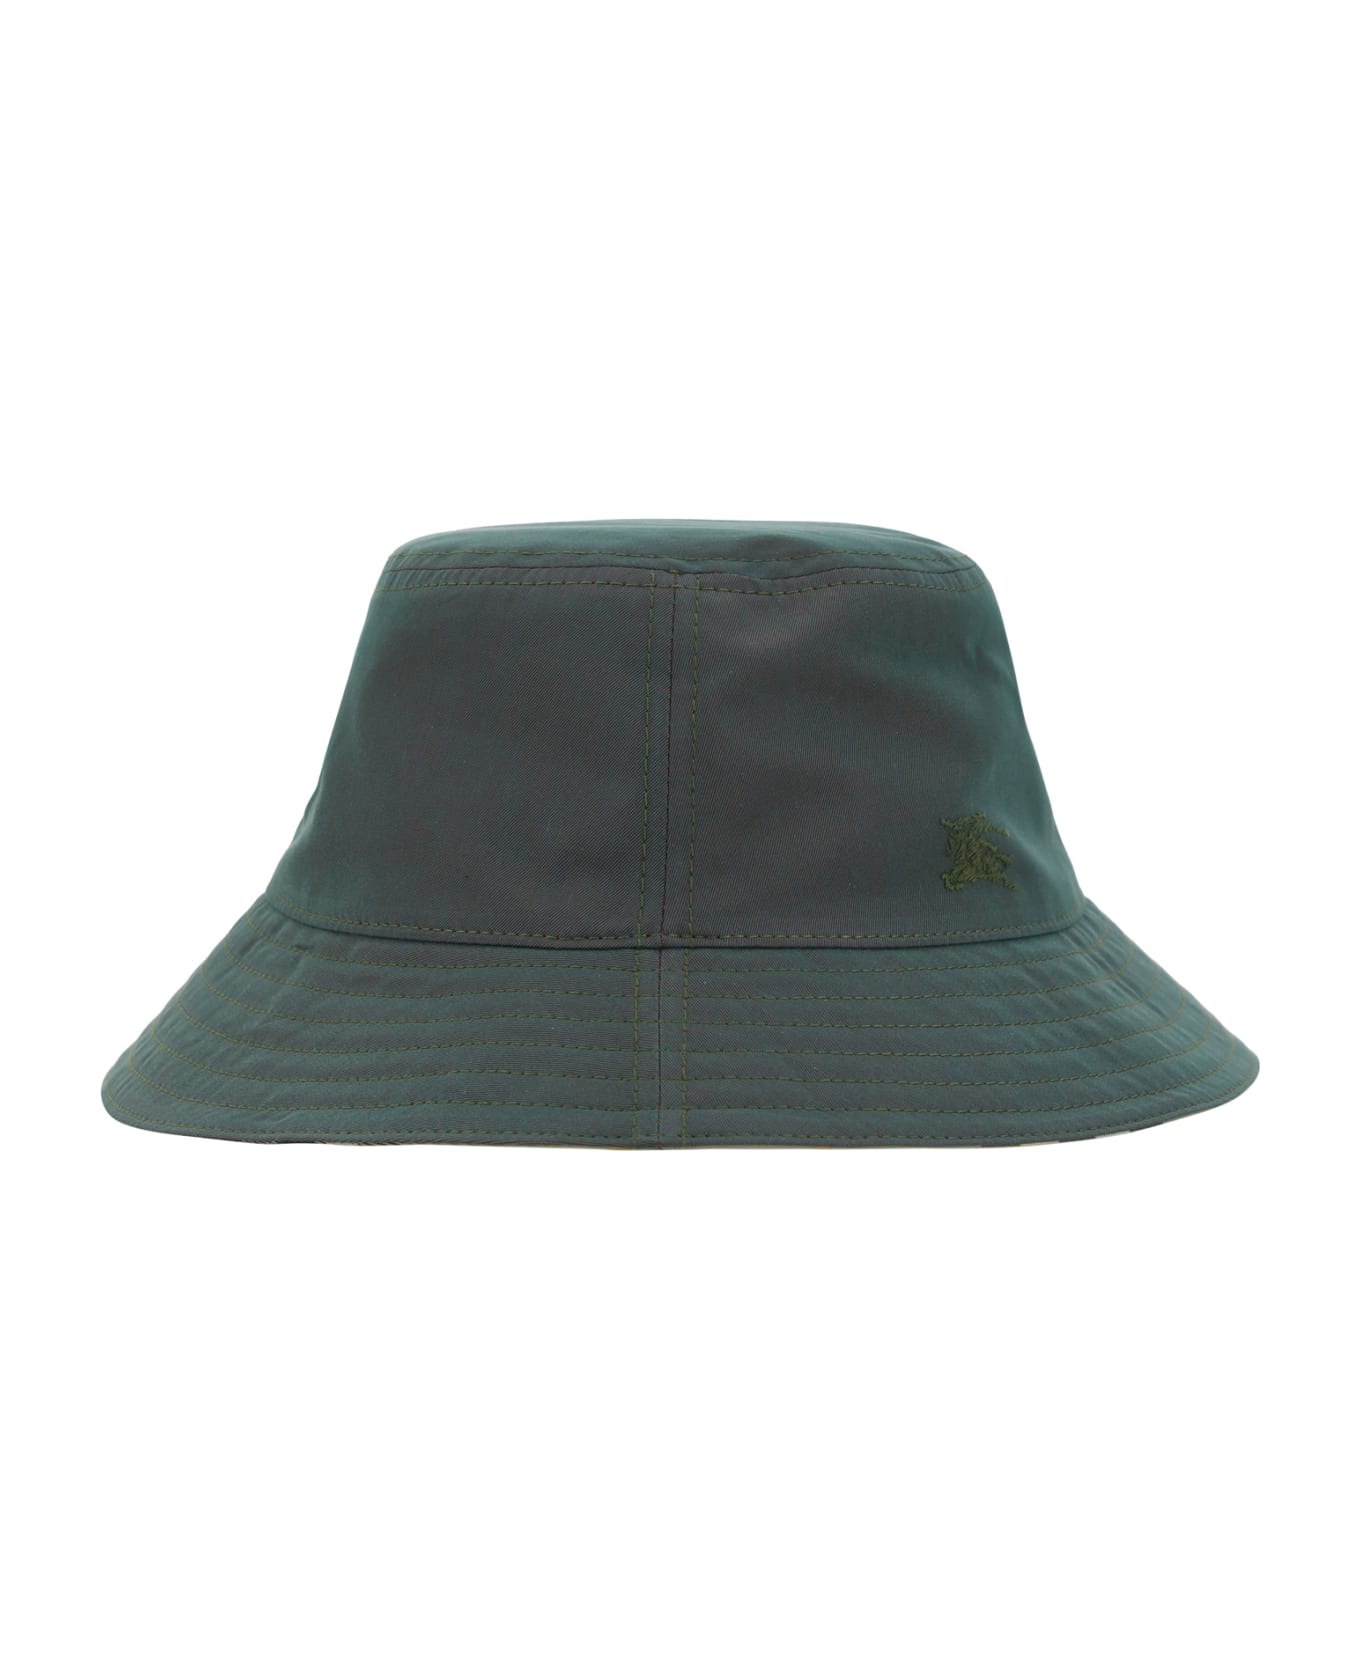 Burberry Bucket Hat - Antique Green